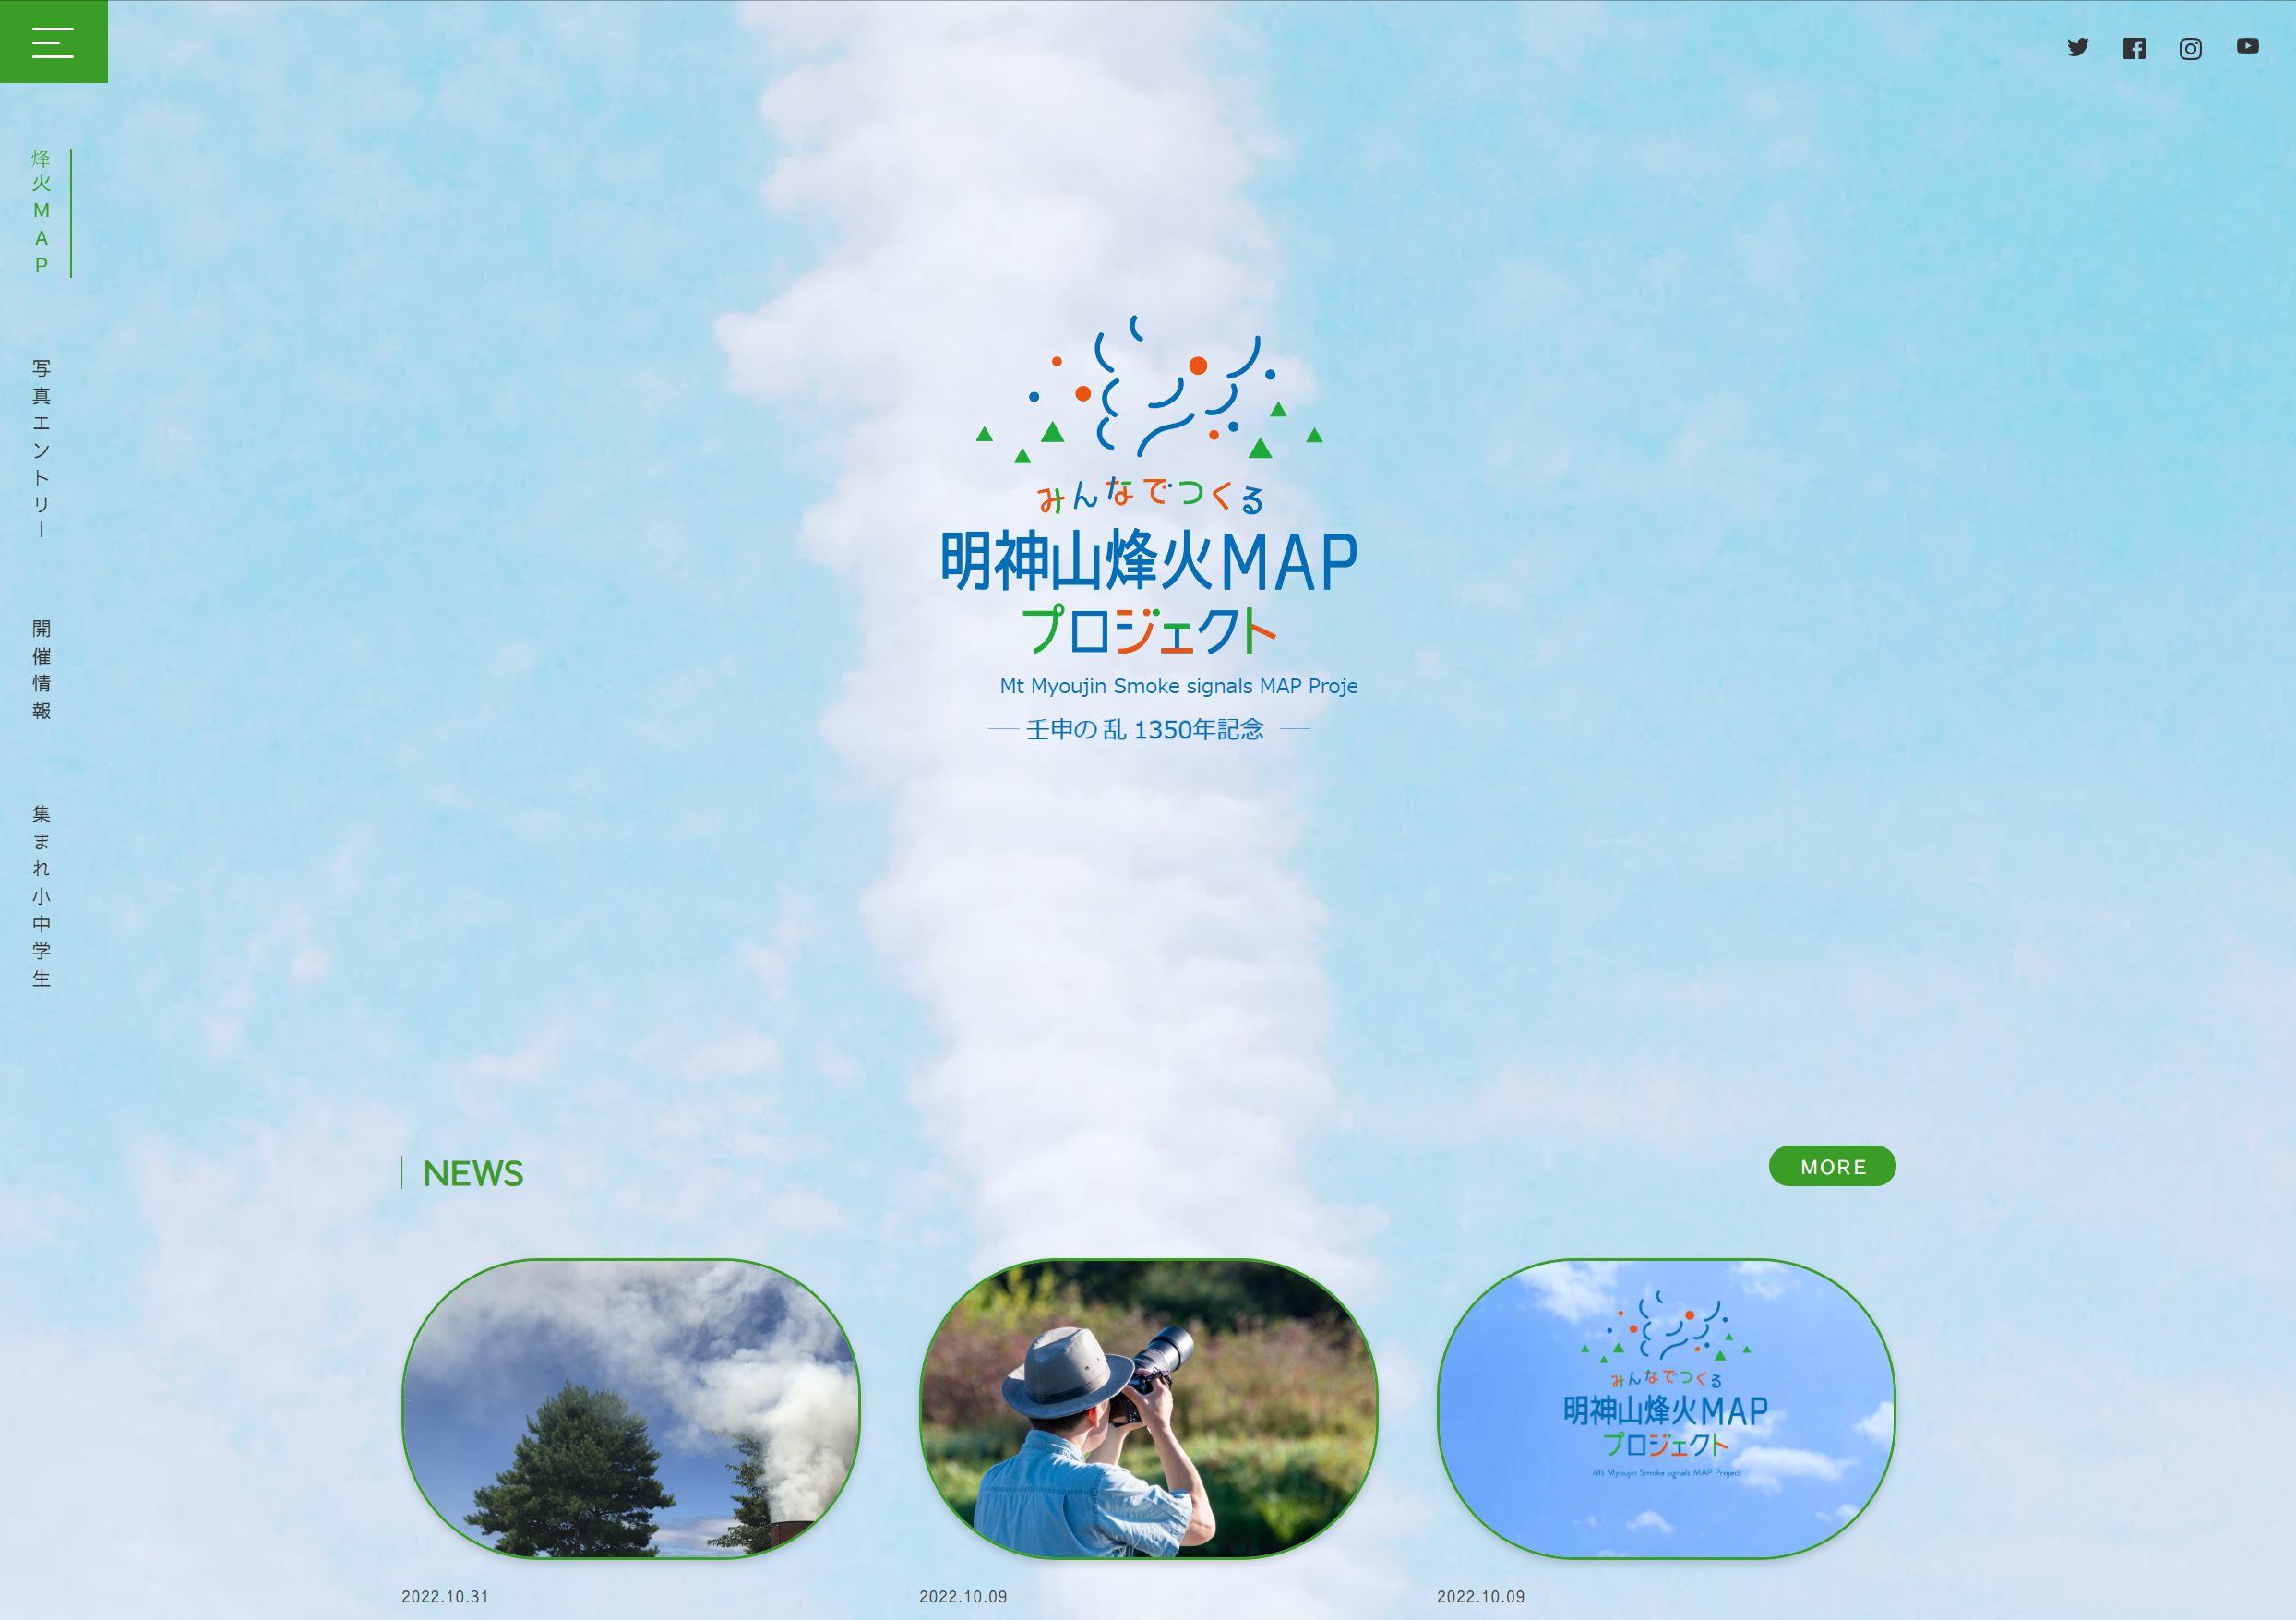 明神山に上がった烽火を撮影した写真でMAP作成！
「みんなでつくる明神山烽火MAPプロジェクト」実施